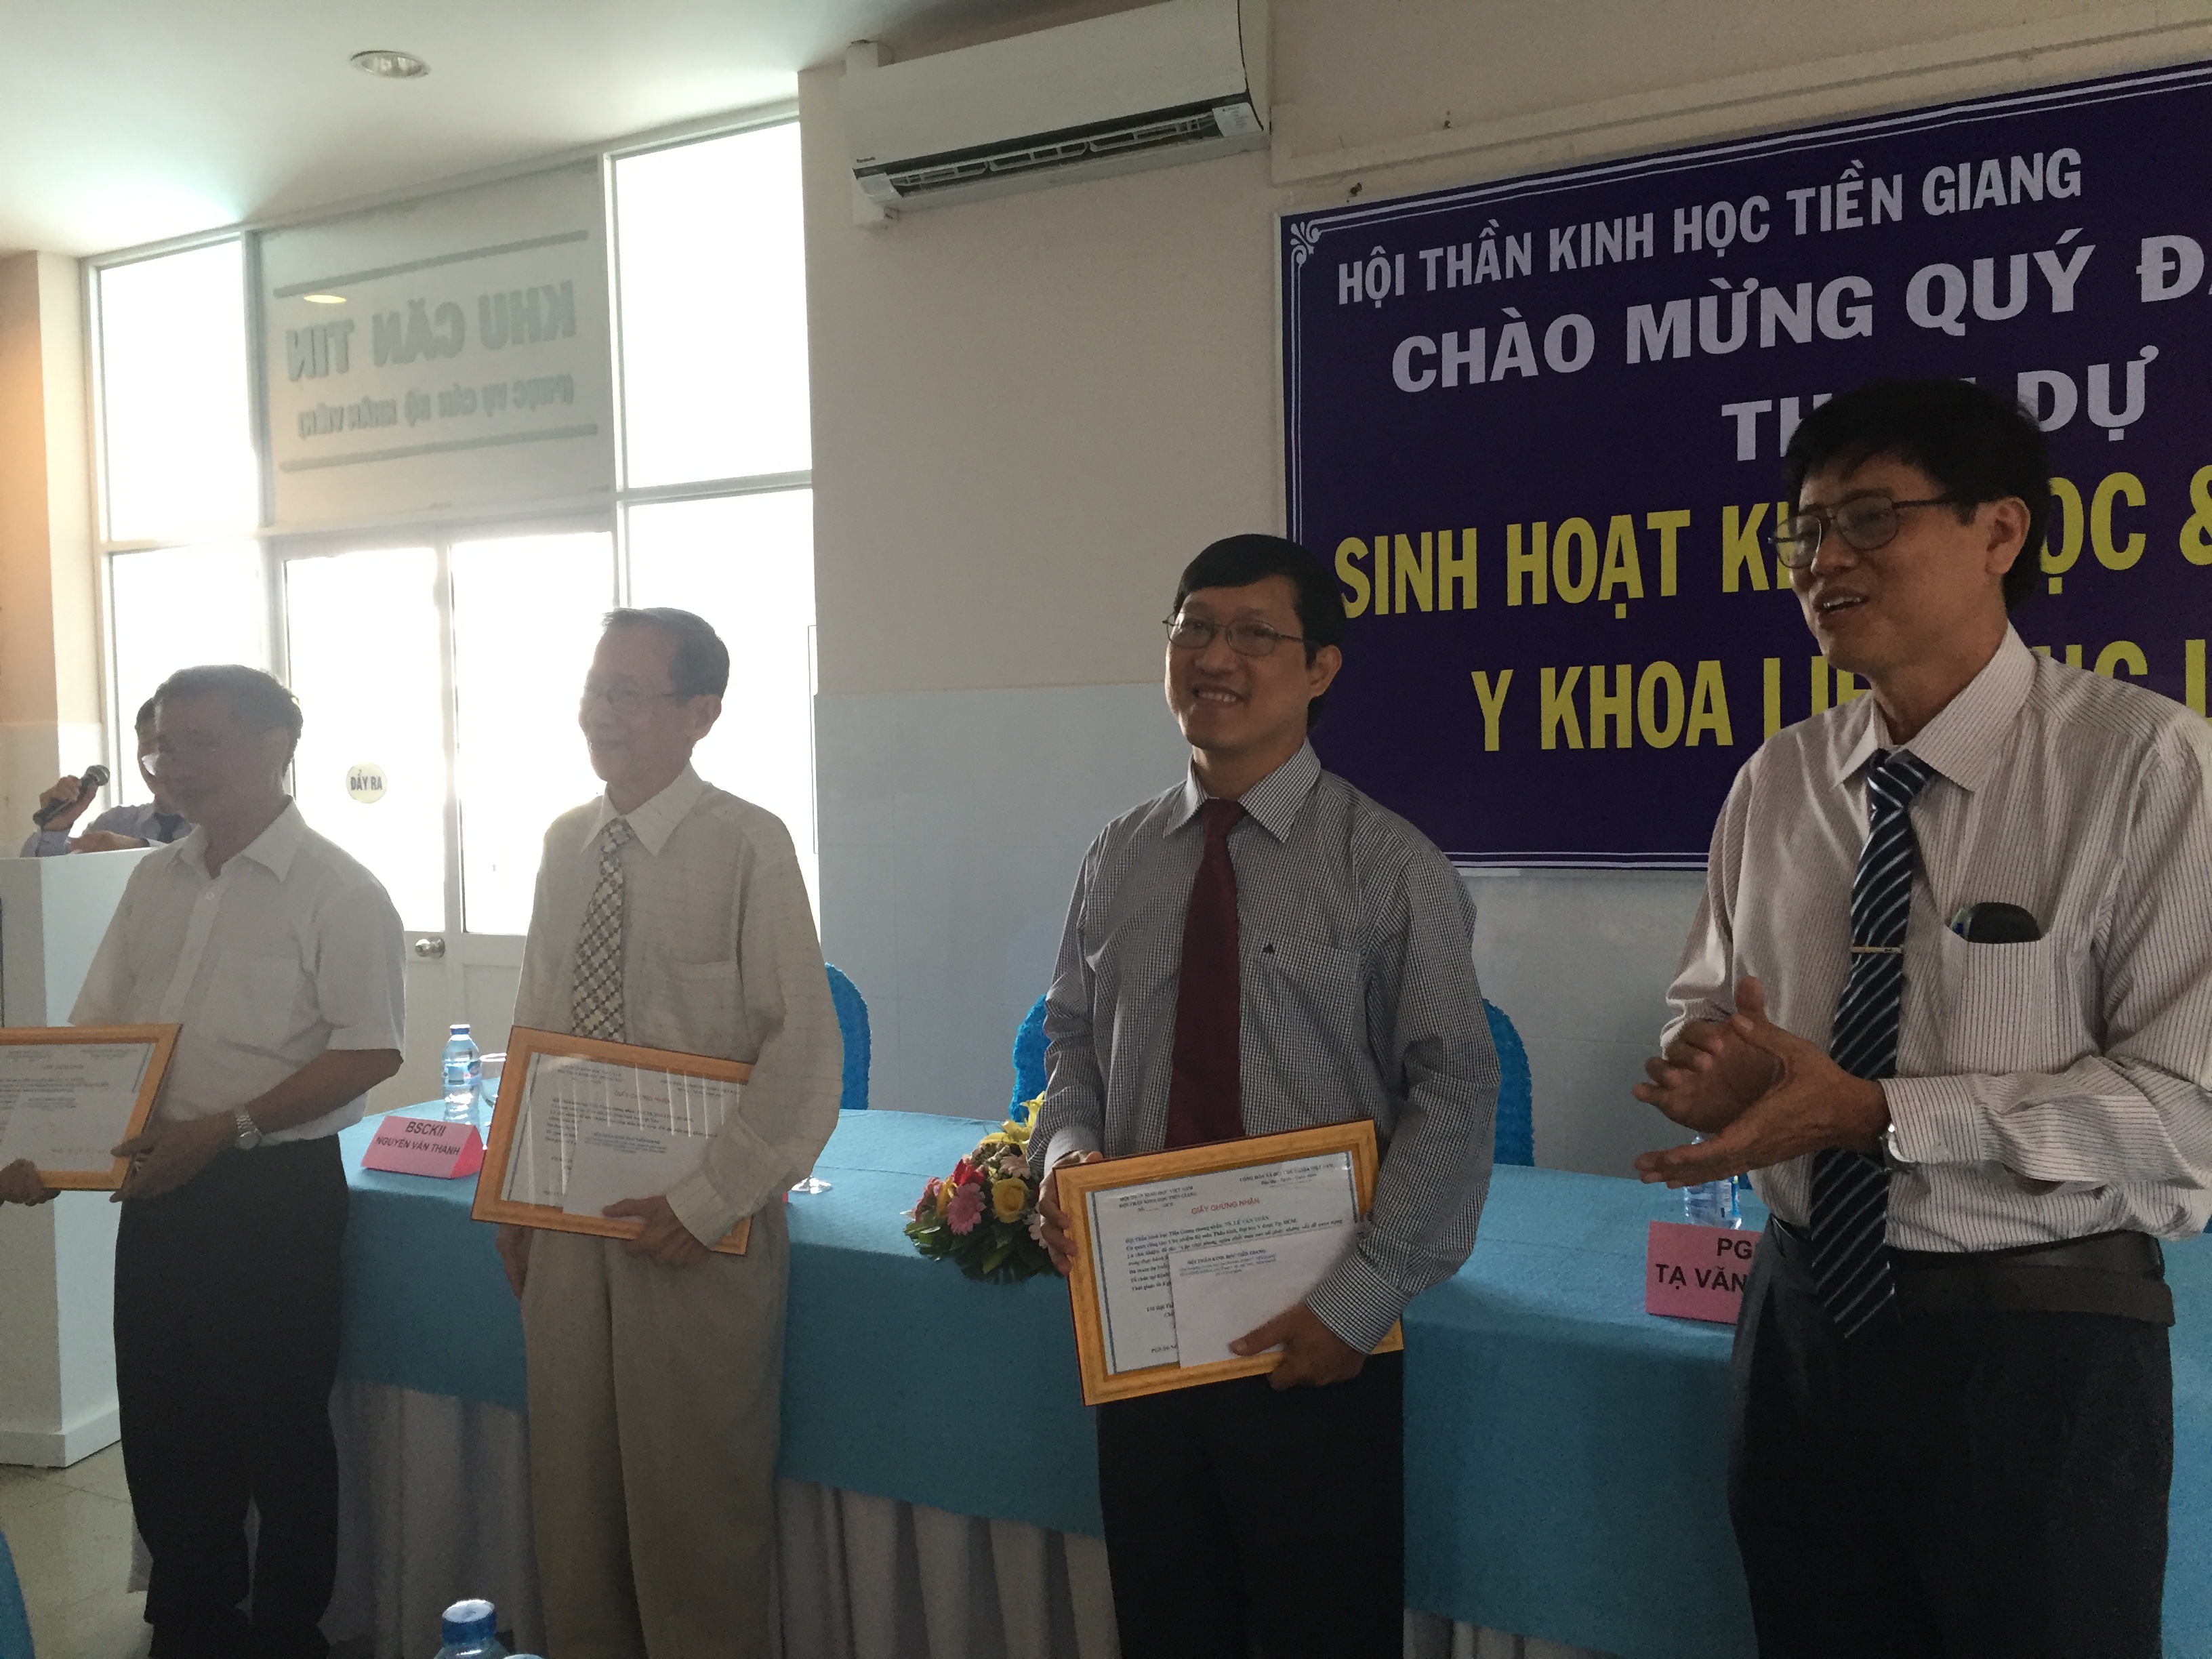 Hội Thần kinh học Tỉnh Tiền Giang vừa tổ chức Hội nghị Khoa học và Đào tạo liên tục – CME